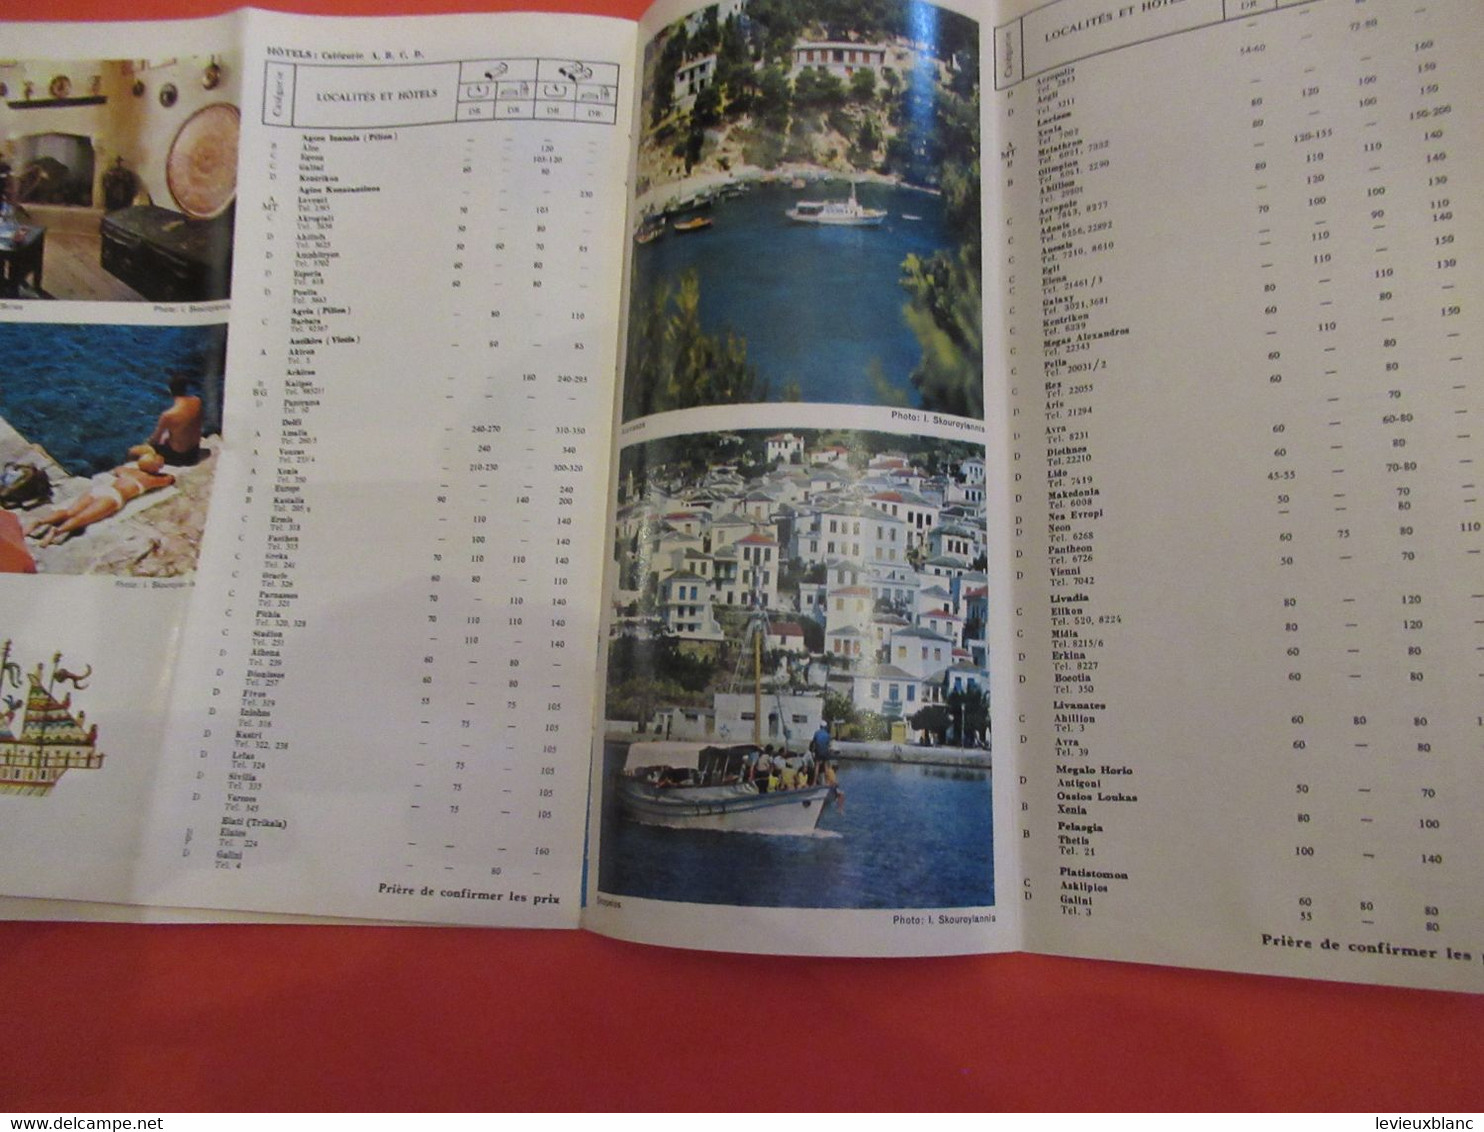 GRECE/ Grèce Centrale/ Iles d'Evia et Sporades / Illustré, avec liste des hotels / 1969              PGC475